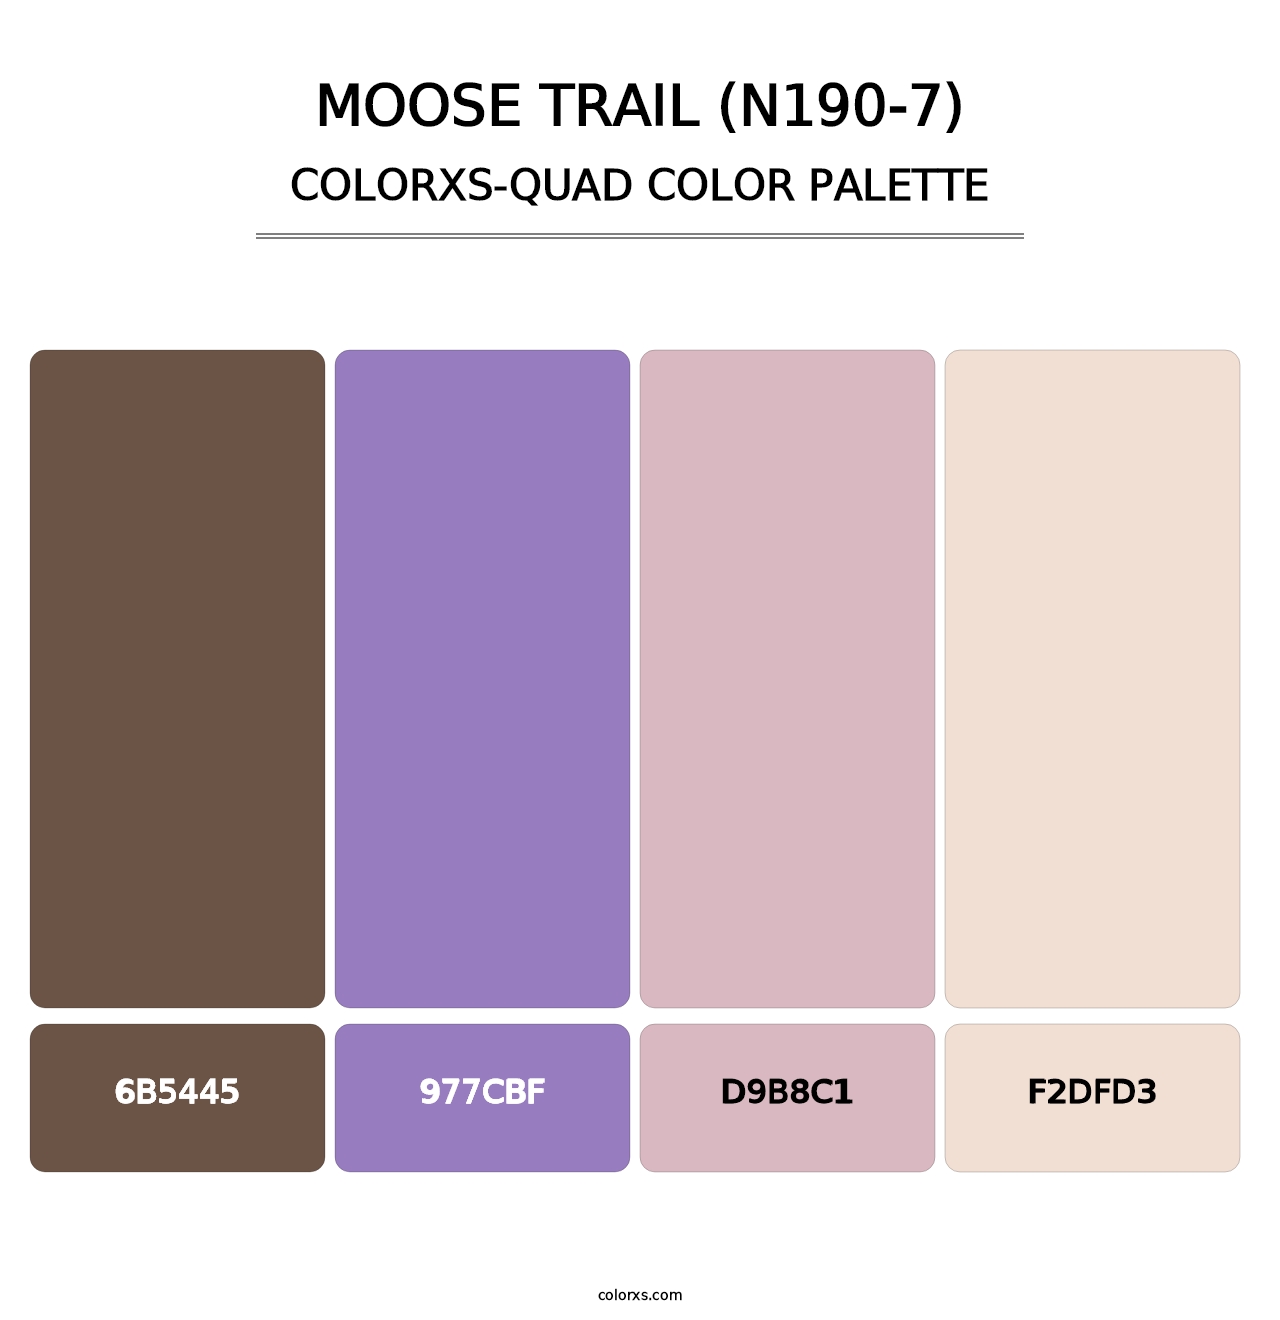 Moose Trail (N190-7) - Colorxs Quad Palette